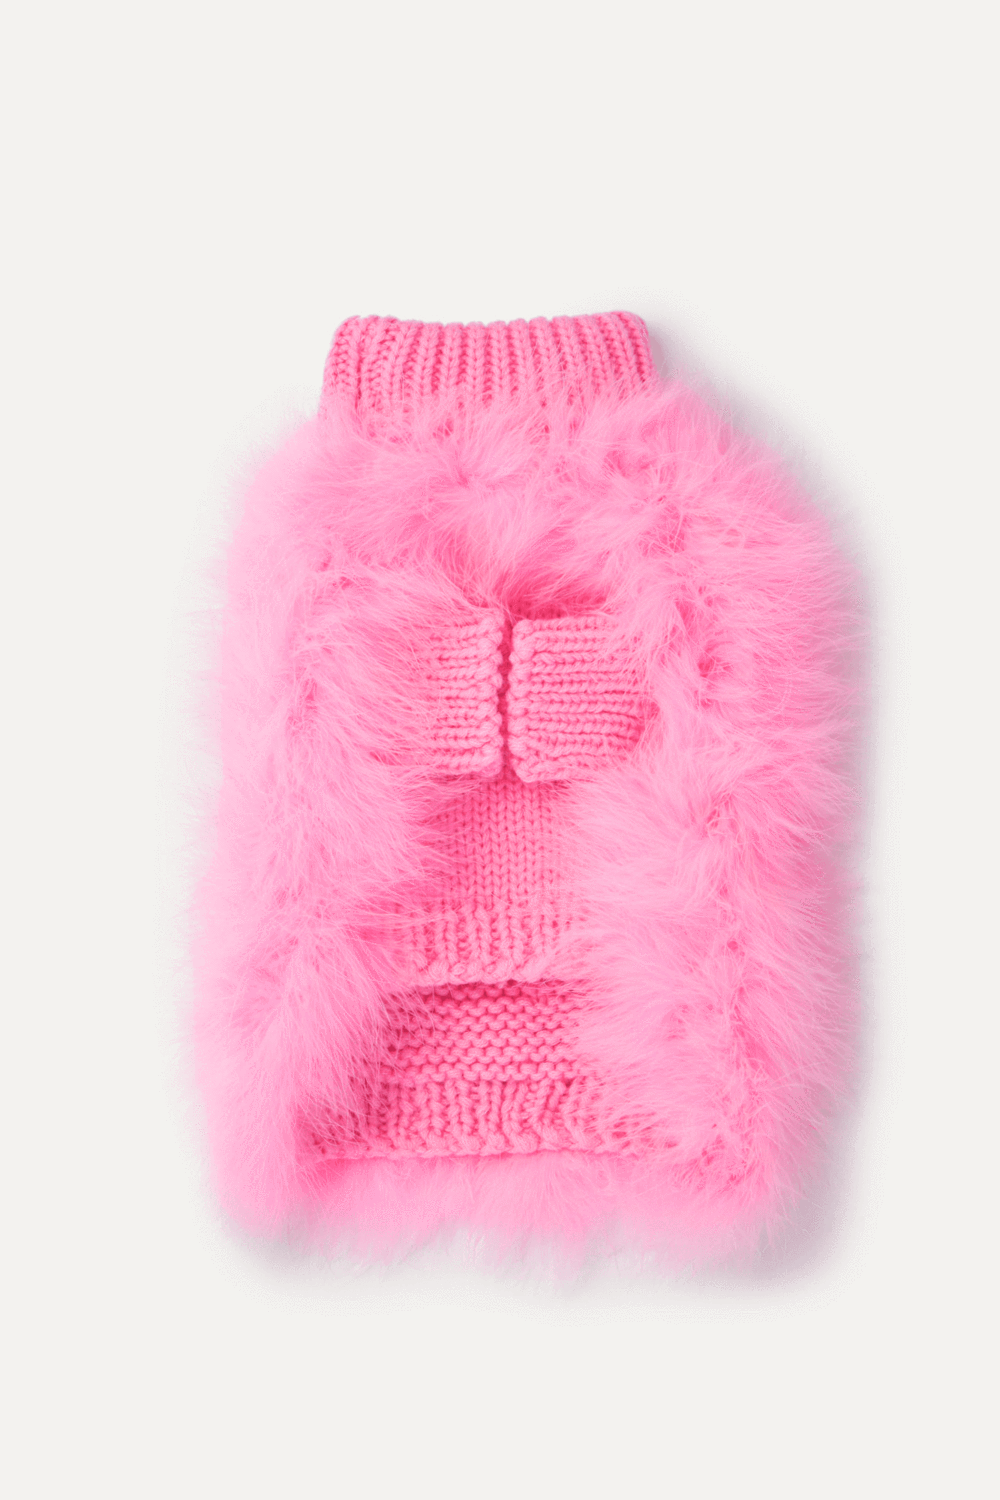 Blouson Sleeve Fluffy Sweater - Camel, Boto Pink Argyle